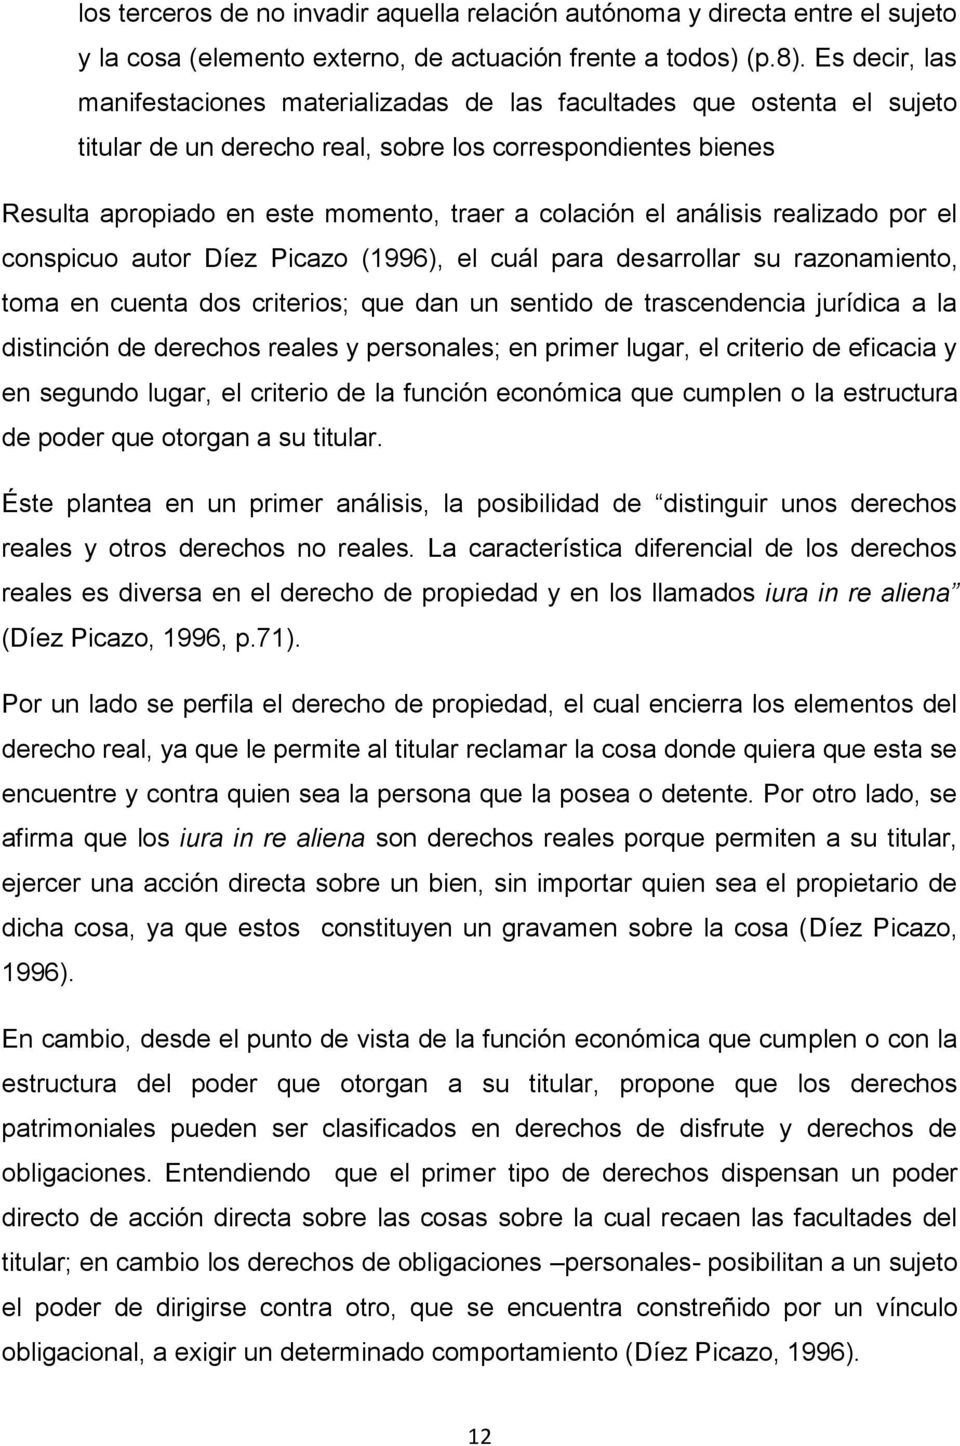 el análisis realizado por el conspicuo autor Díez Picazo (1996), el cuál para de sarrollar su razonamiento, toma en cuenta dos criterios; que dan un sentido de trascendencia jurídica a la distinción